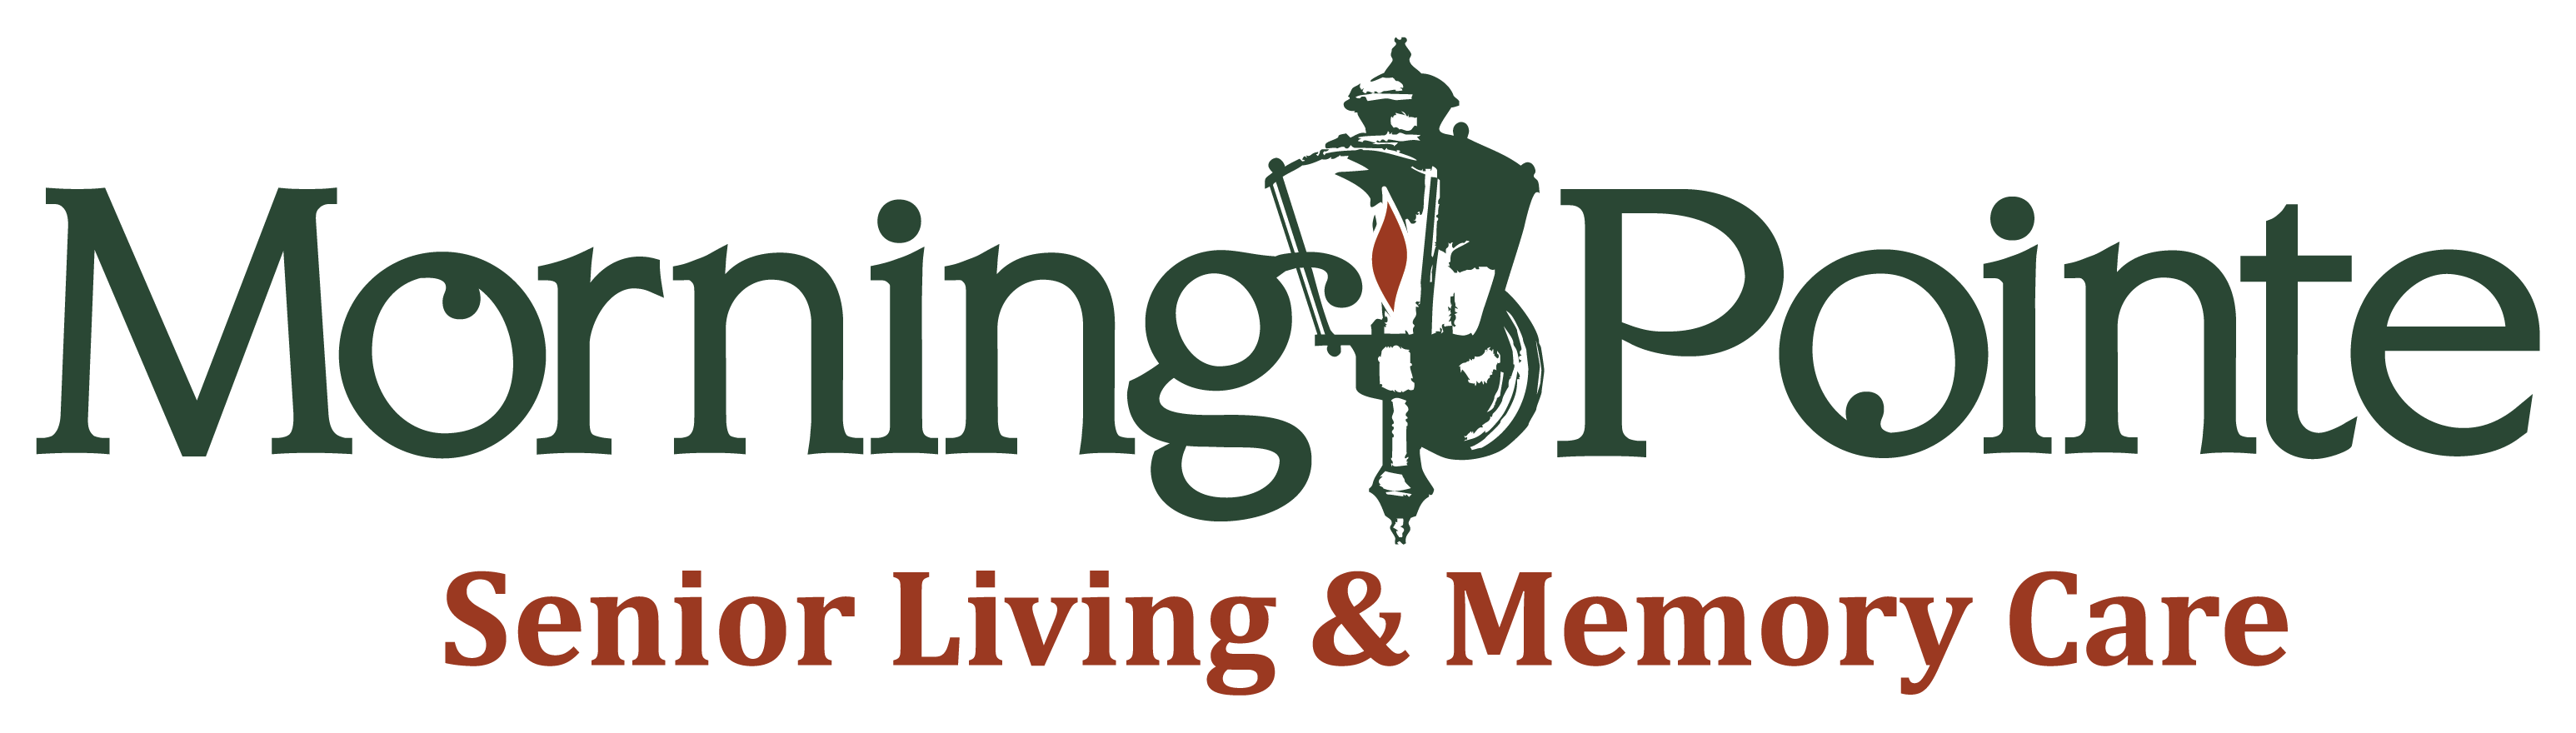 Morning_Pointe_Logo.png